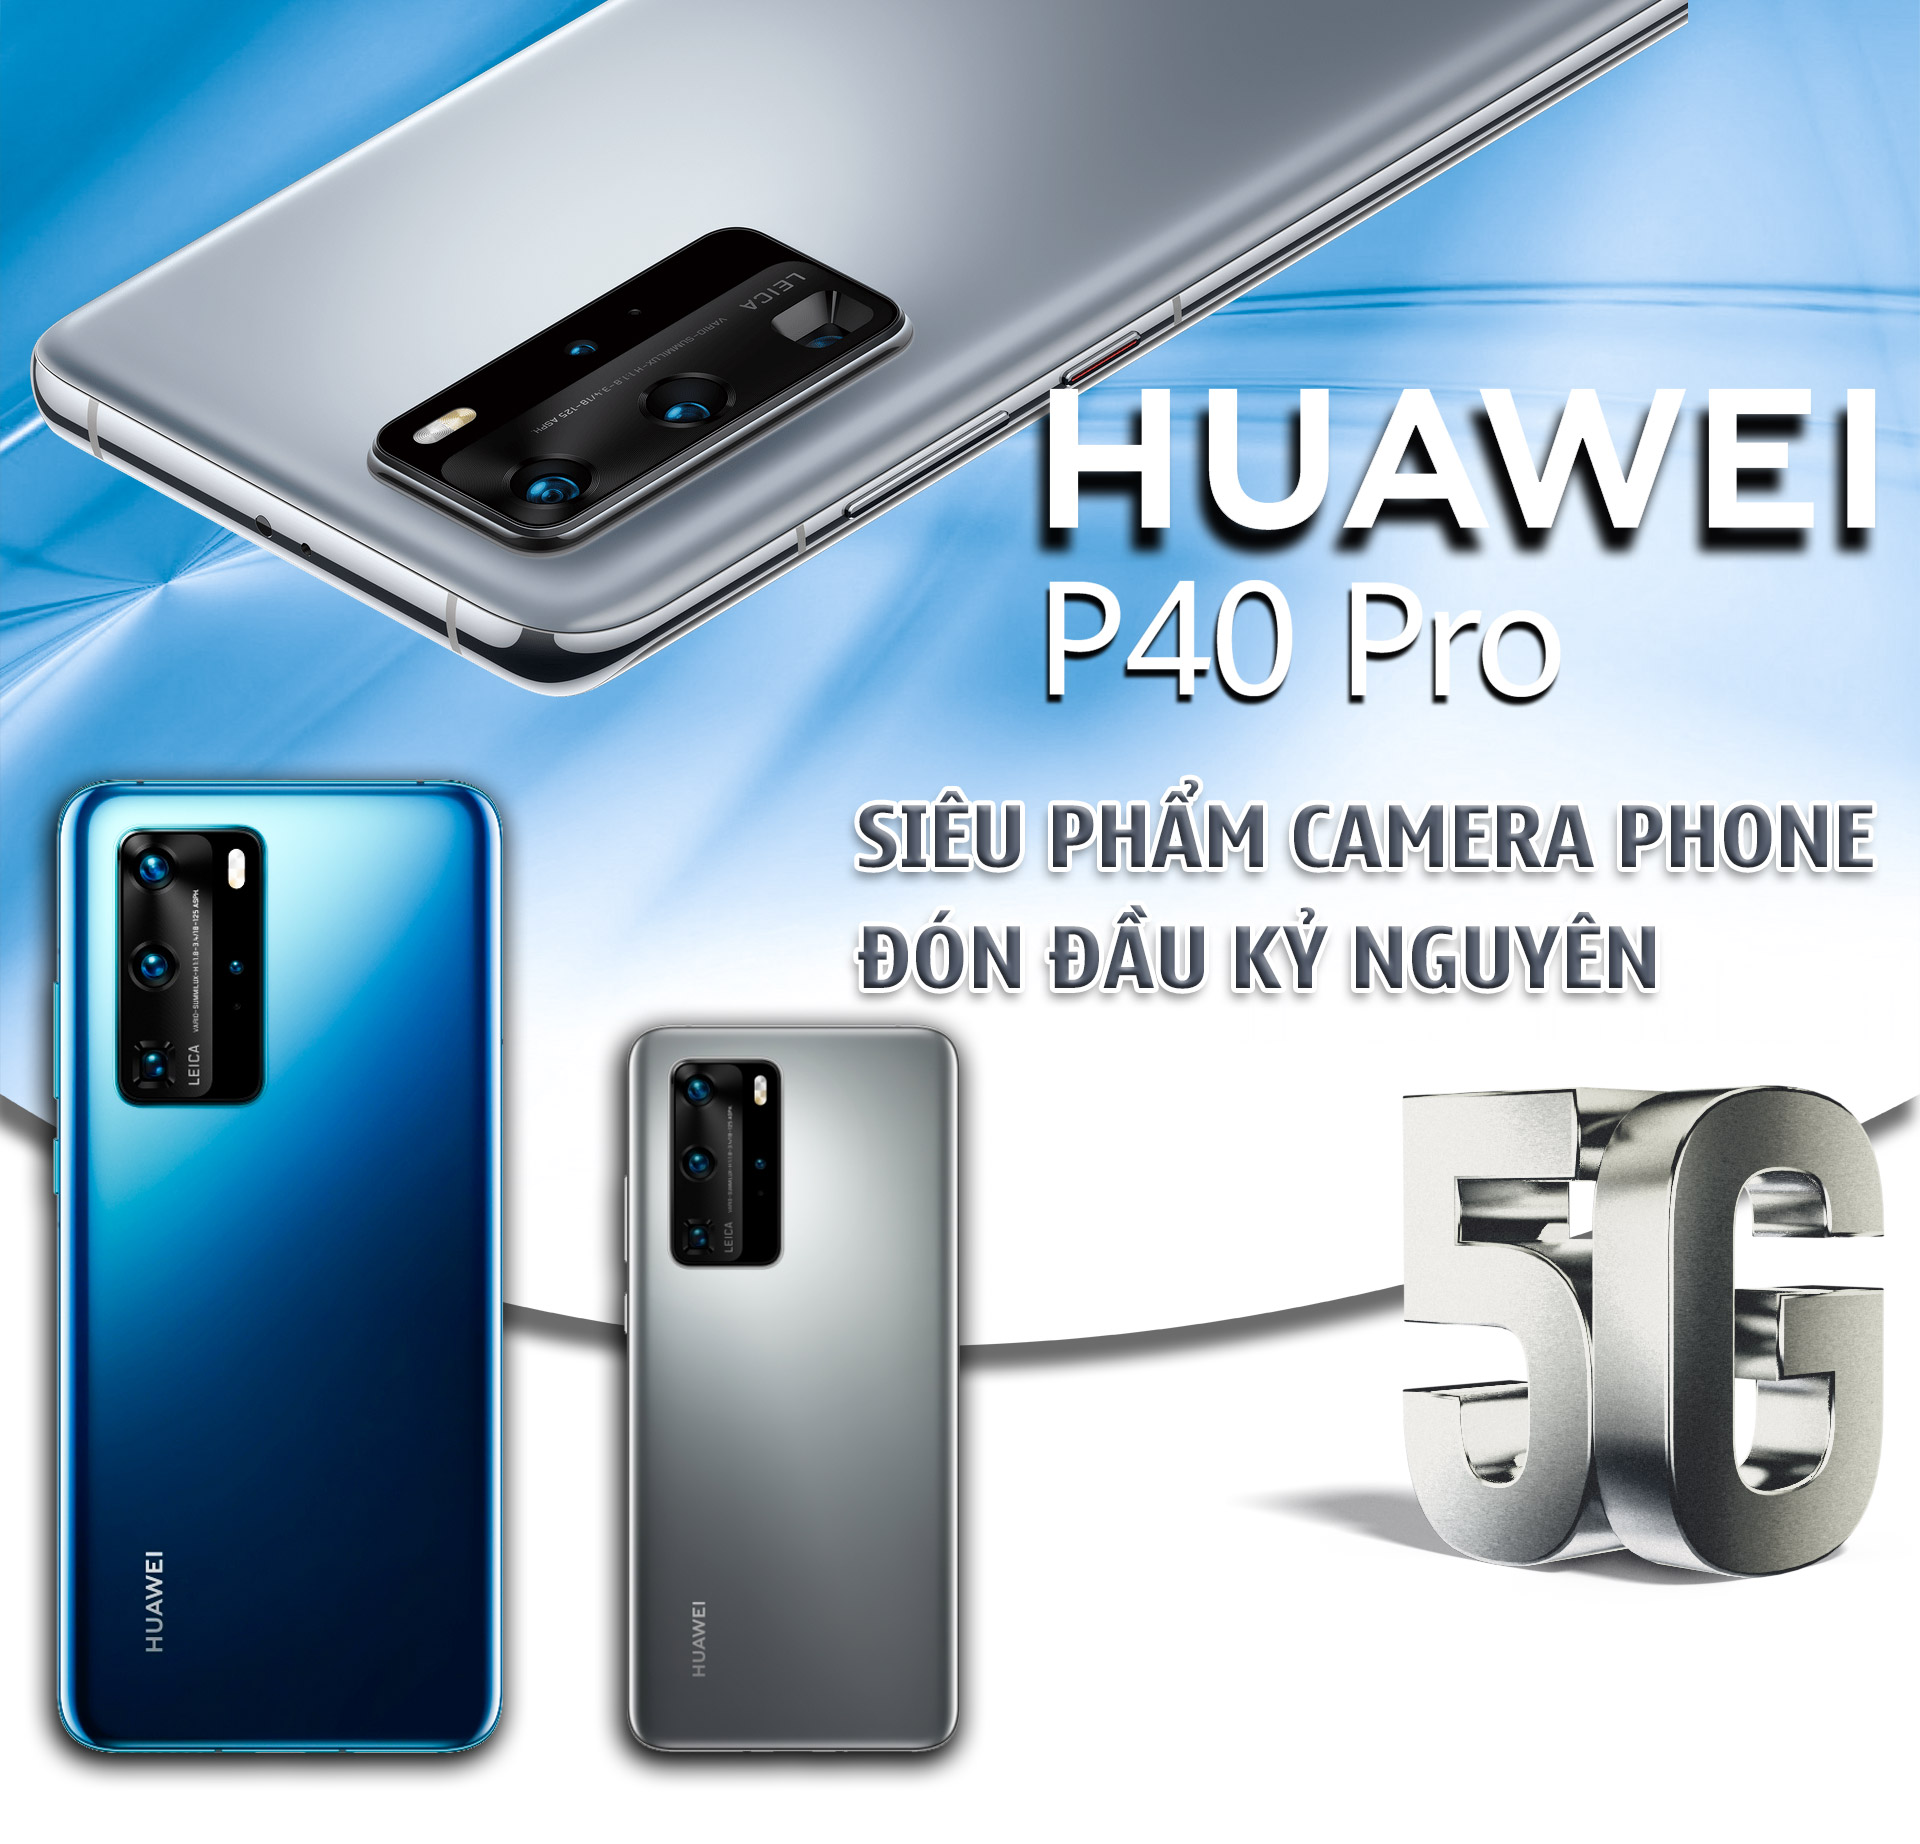 Huawei P40 Pro: Siêu phẩm camera phone đón đầu kỷ nguyên 5G - 1